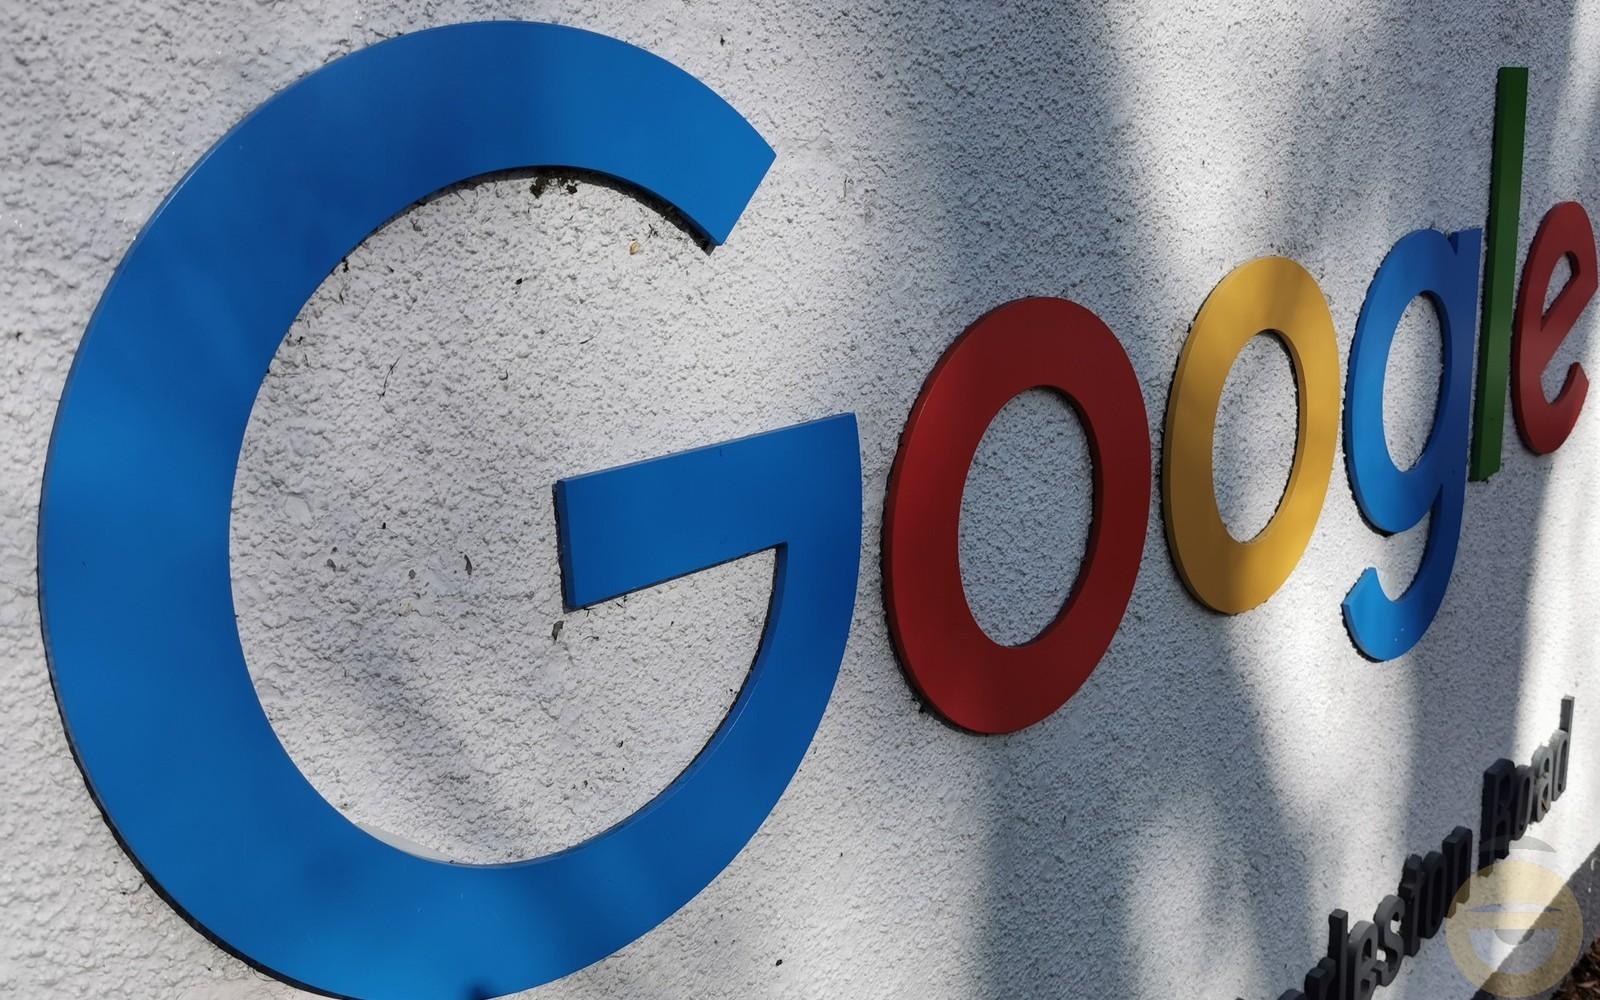 Ο CEO της Google λέει στους εργαζομένους ότι η παραγωγικότητα τους πρέπει να βελτιωθεί, ζητώντας σχετικές ιδέες